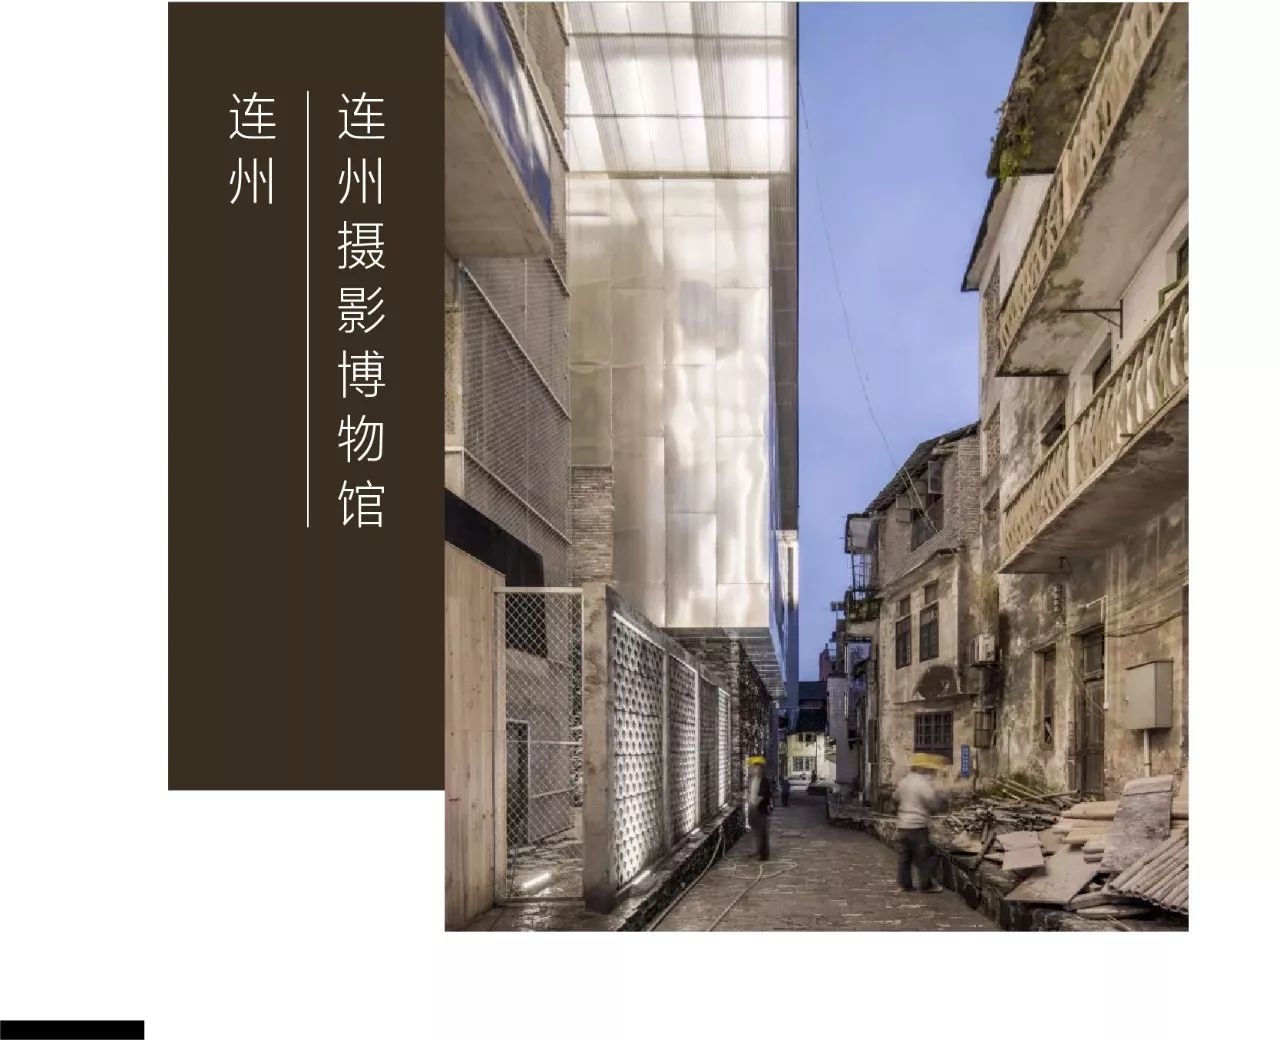 中国第一个研究当代摄影的公立摄影博物馆"连州摄影博物馆